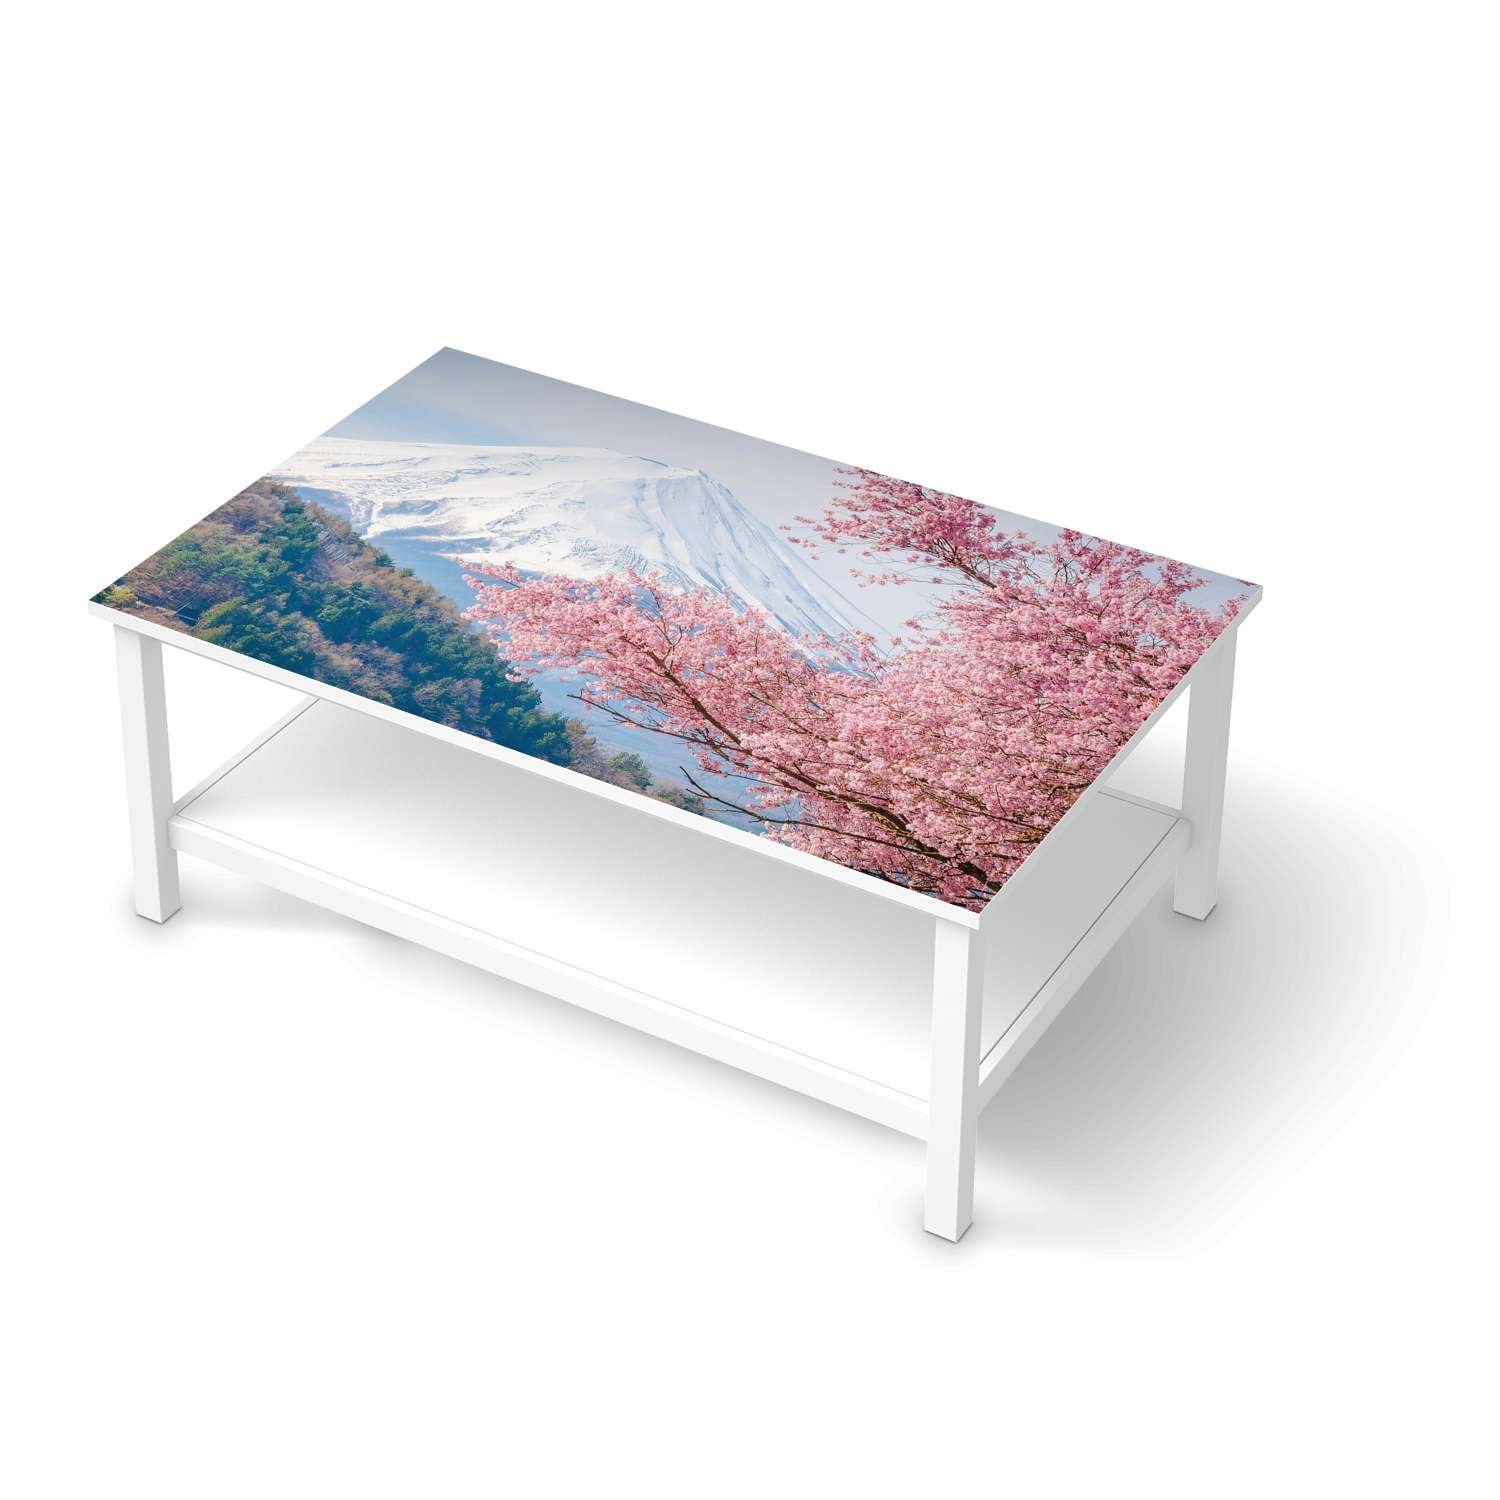 M?belfolie IKEA Hemnes Tisch 118x75 cm - Design: Mount Fuji von creatisto